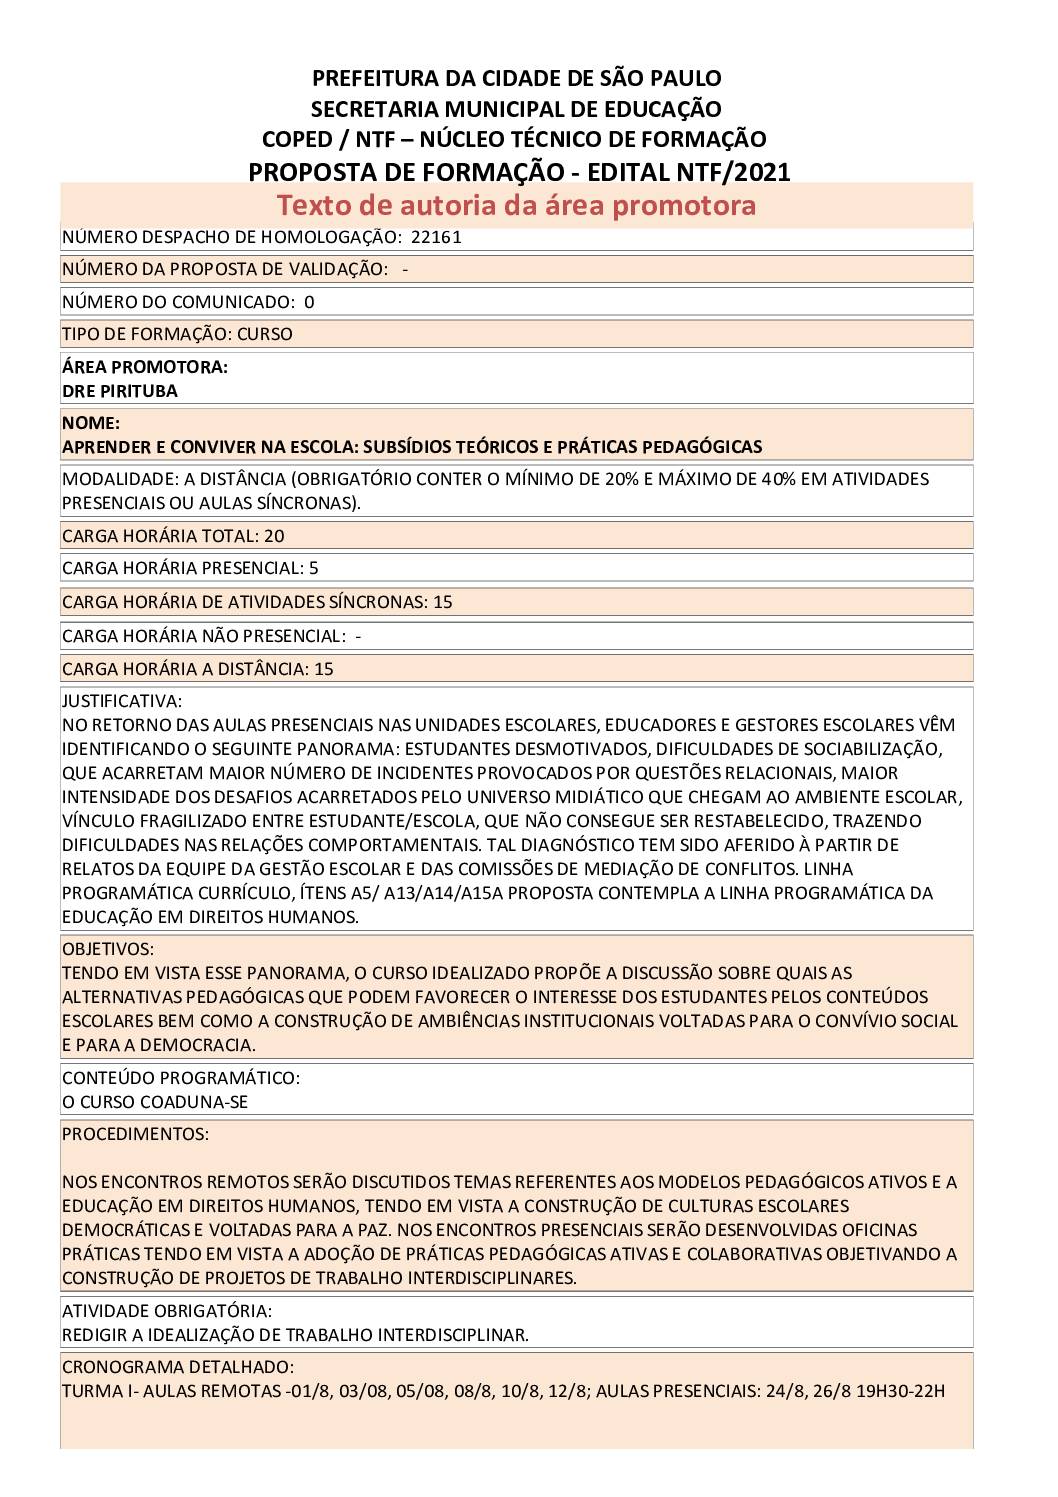 PDF com informações sobre o curso: APRENDER E CONVIVER NA ESCOLA: SUBSÍDIOS TEÓRICOS E PRÁTICAS PEDAGÓGICAS